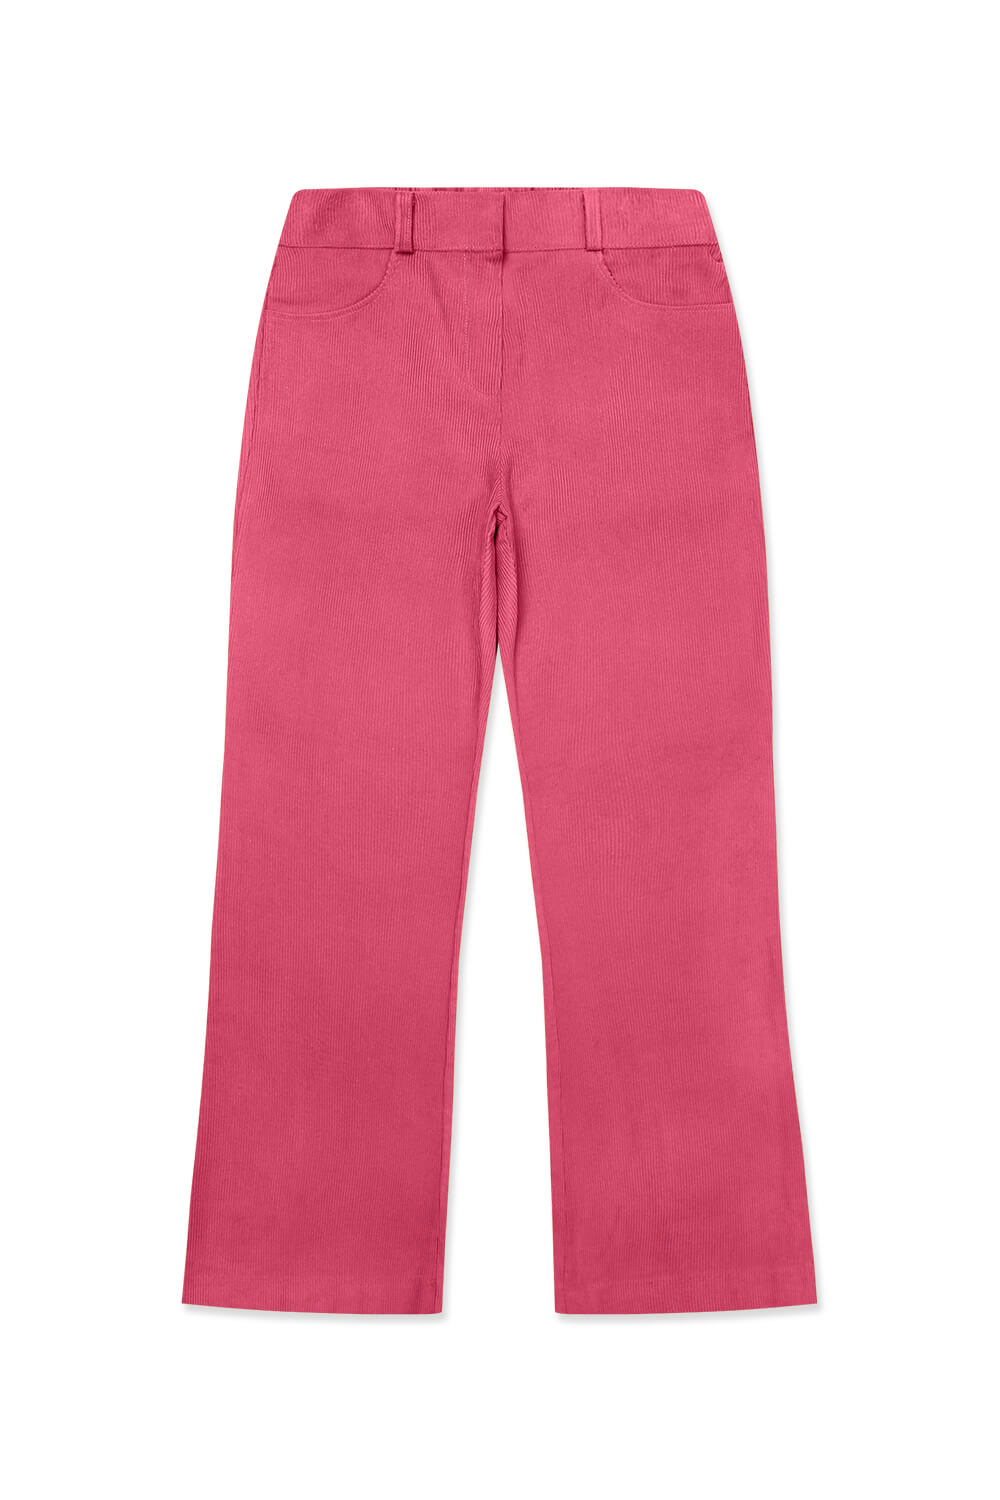 (WOMEN) Bagatelle Corduroy Pants_Pink